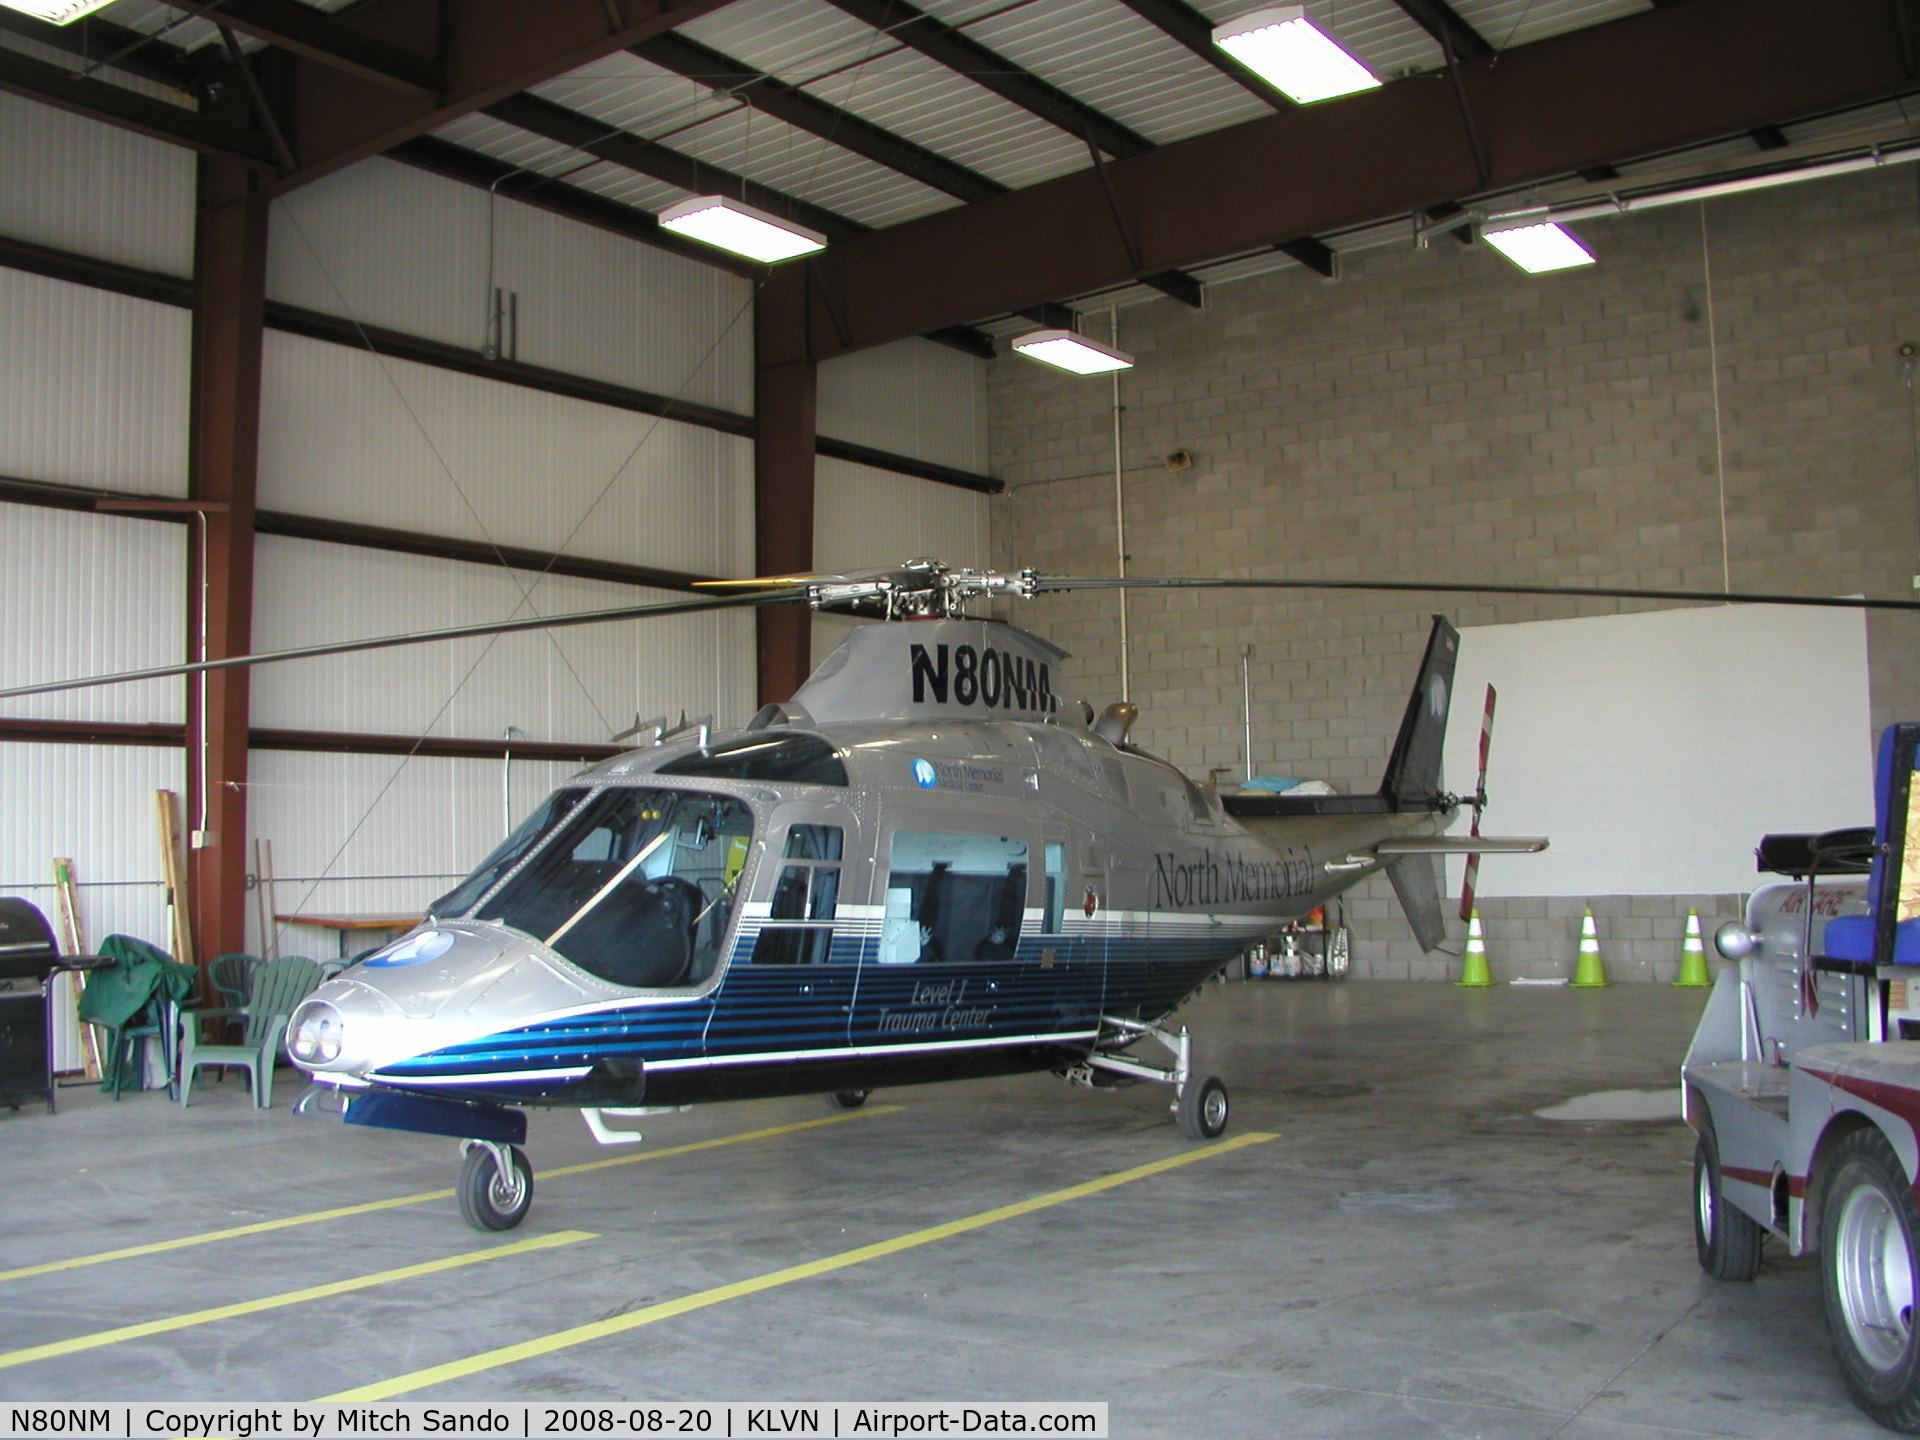 N80NM, 1985 Agusta A109A II C/N 7327, Parked inside the hangar.